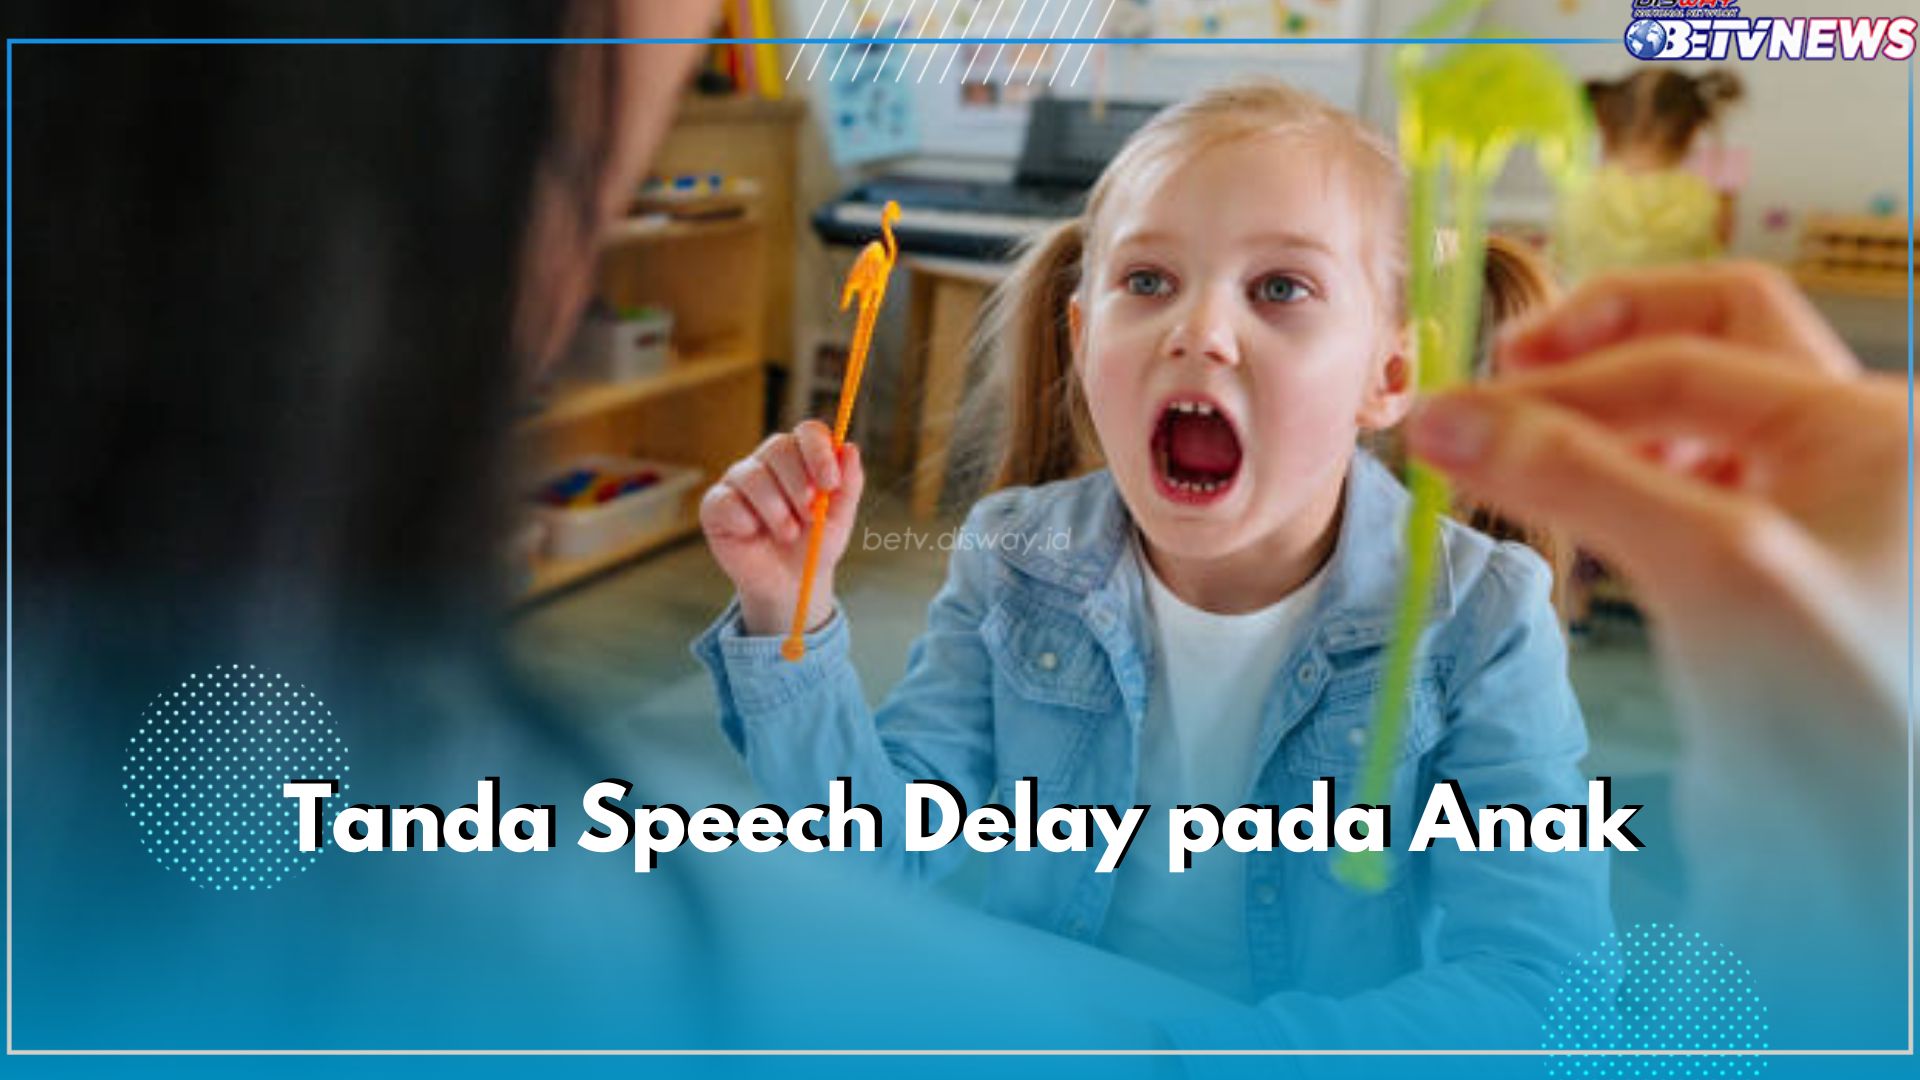 Parents, Yuk Deteksi Speech Delay pada Anak Sejak Dini! Ini Tandanya